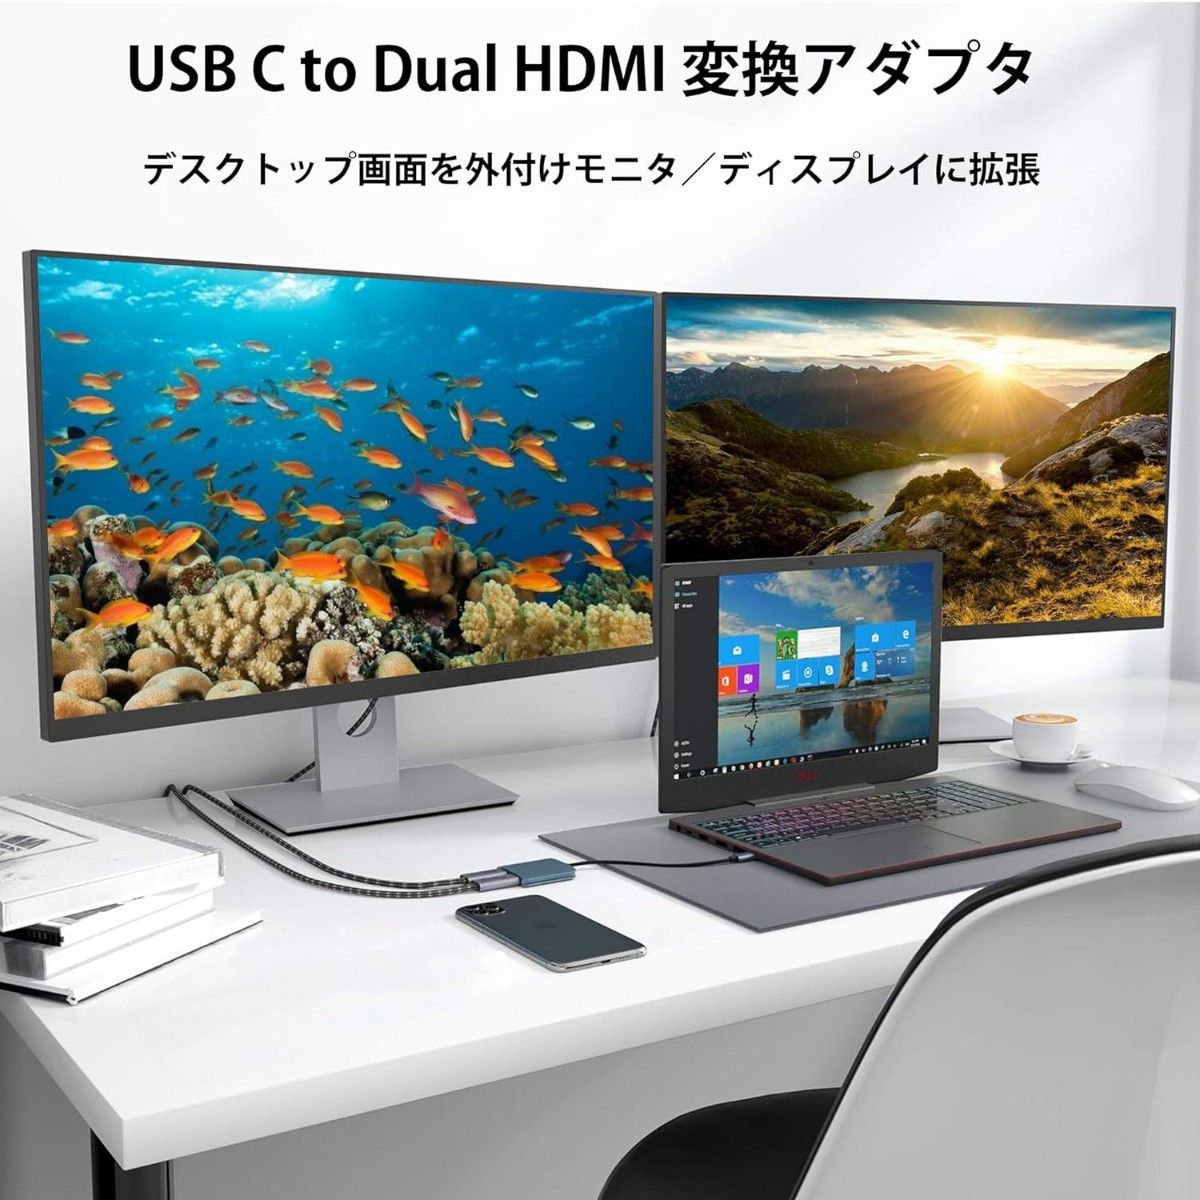 USB C HDMI 変換アダプター Aibilangose デュアル HDMI Type-C マルチディスプレイアダプタ①